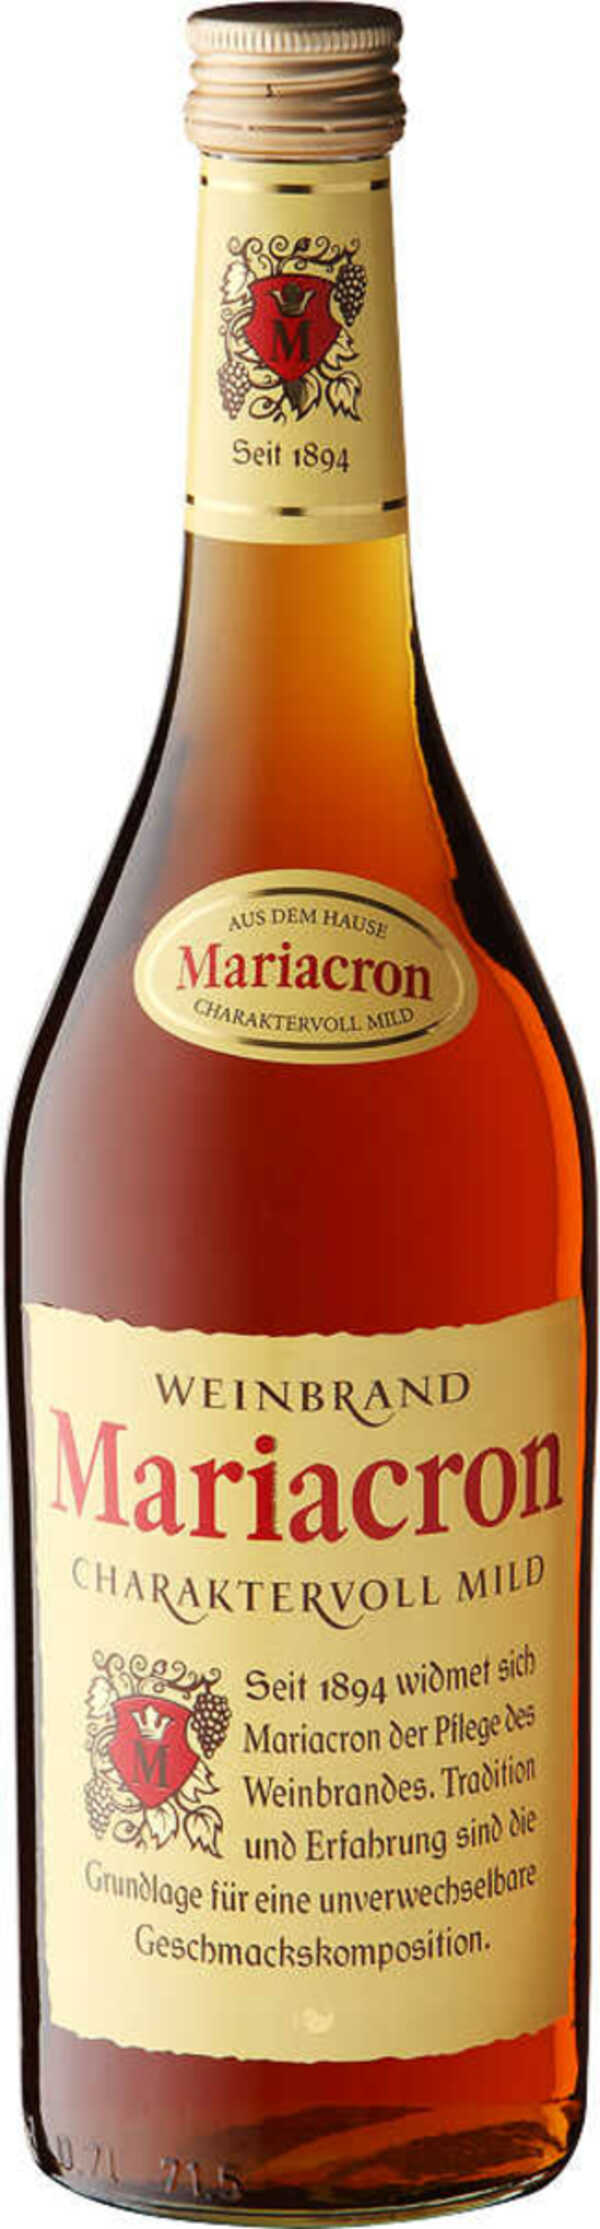 Bild 1 von MARIACRON Weinbrand